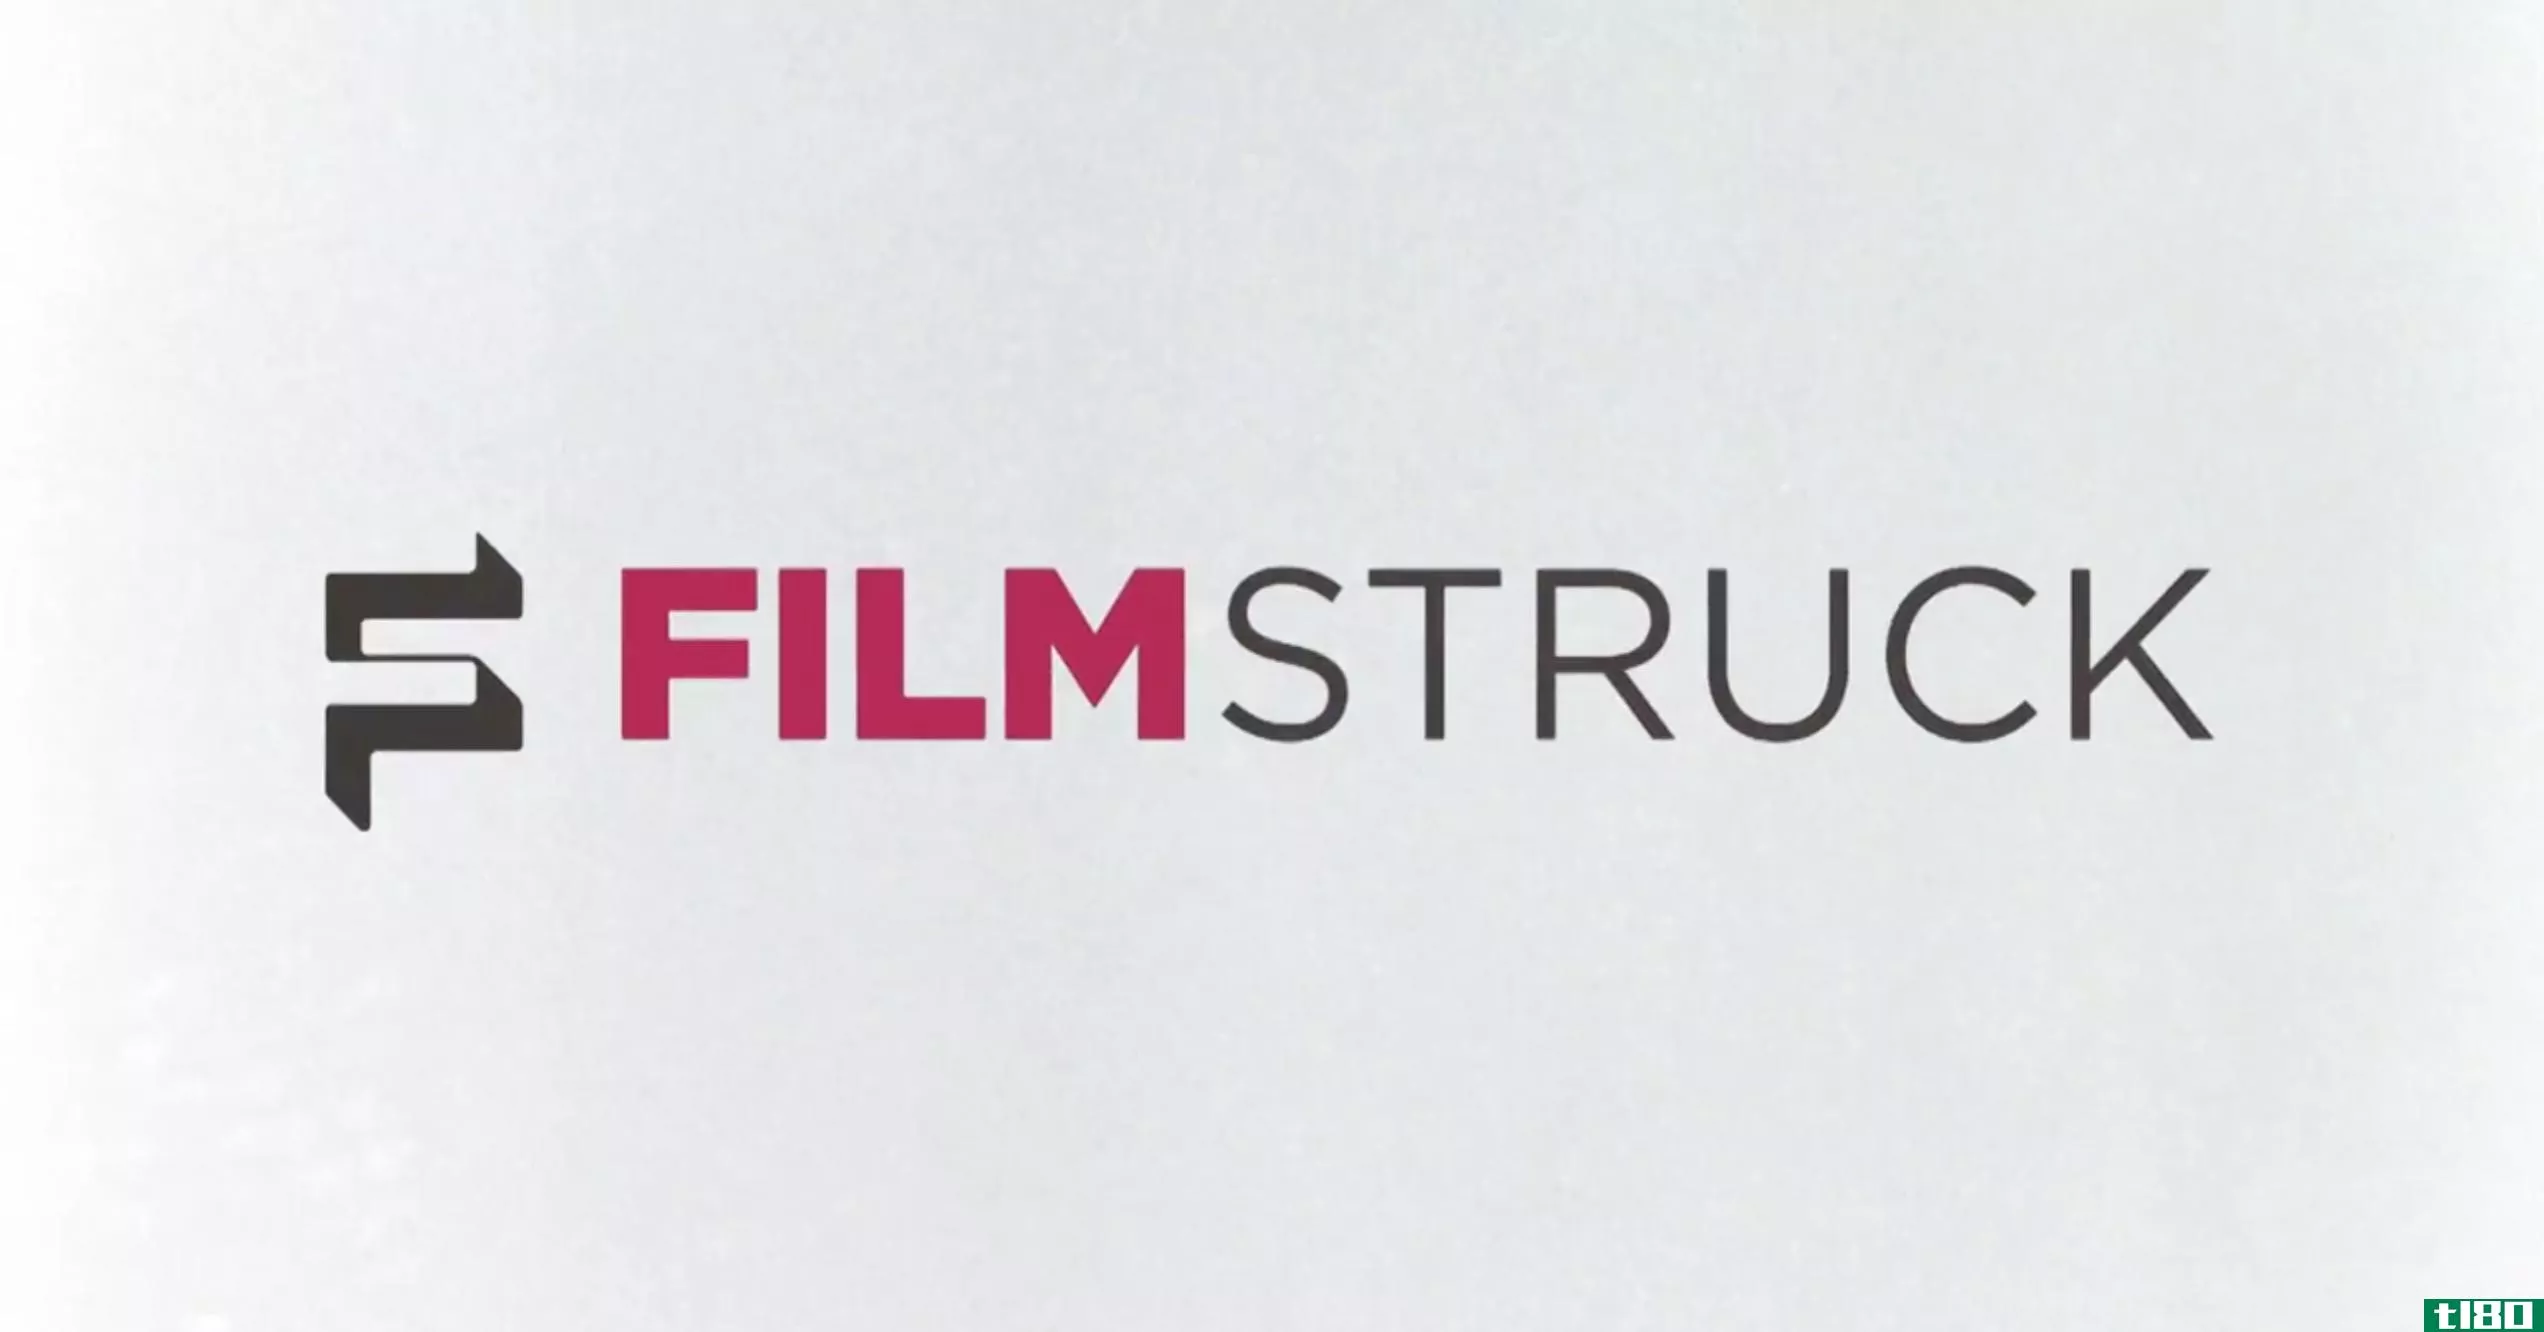 filmstruck是一个为电影迷提供的流媒体服务，它将于今年秋天推出